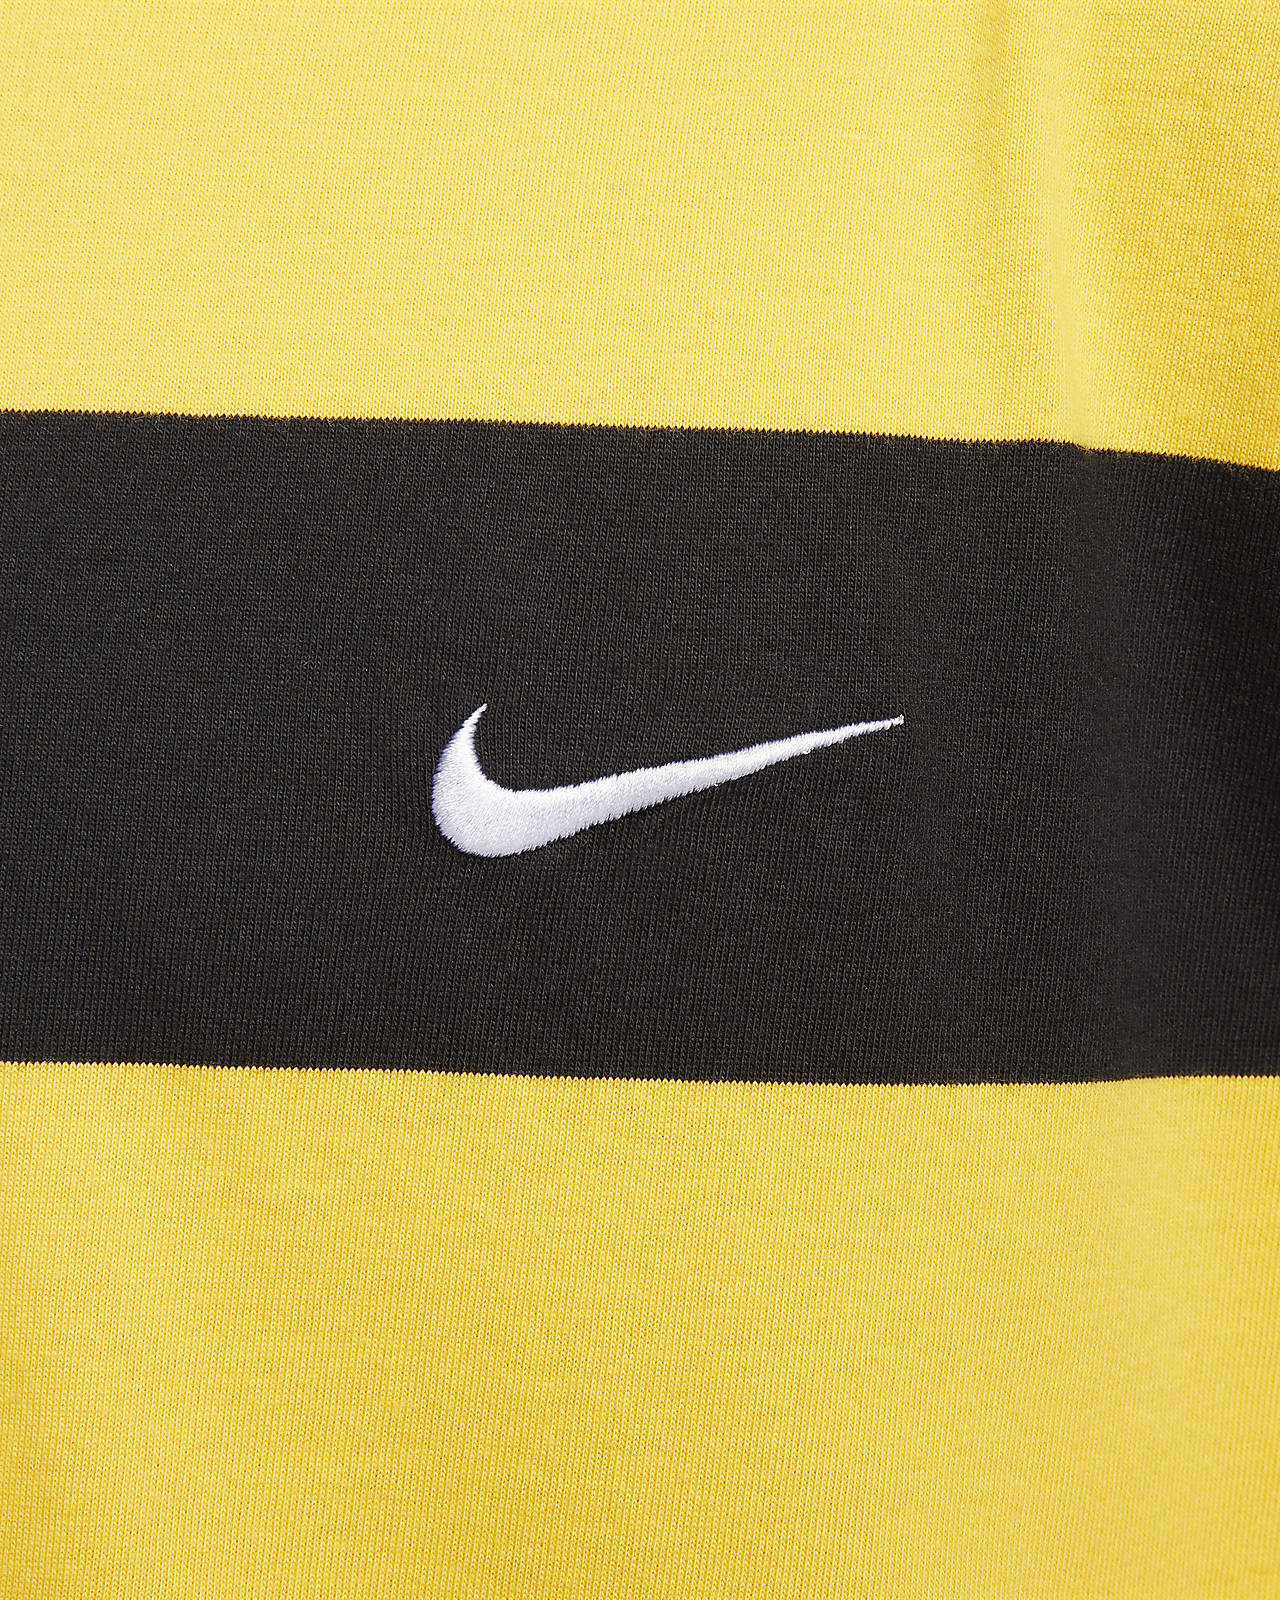 empeorar pegatina Especialidad Nike SB Camiseta de skateboard - Hombre. Nike ES